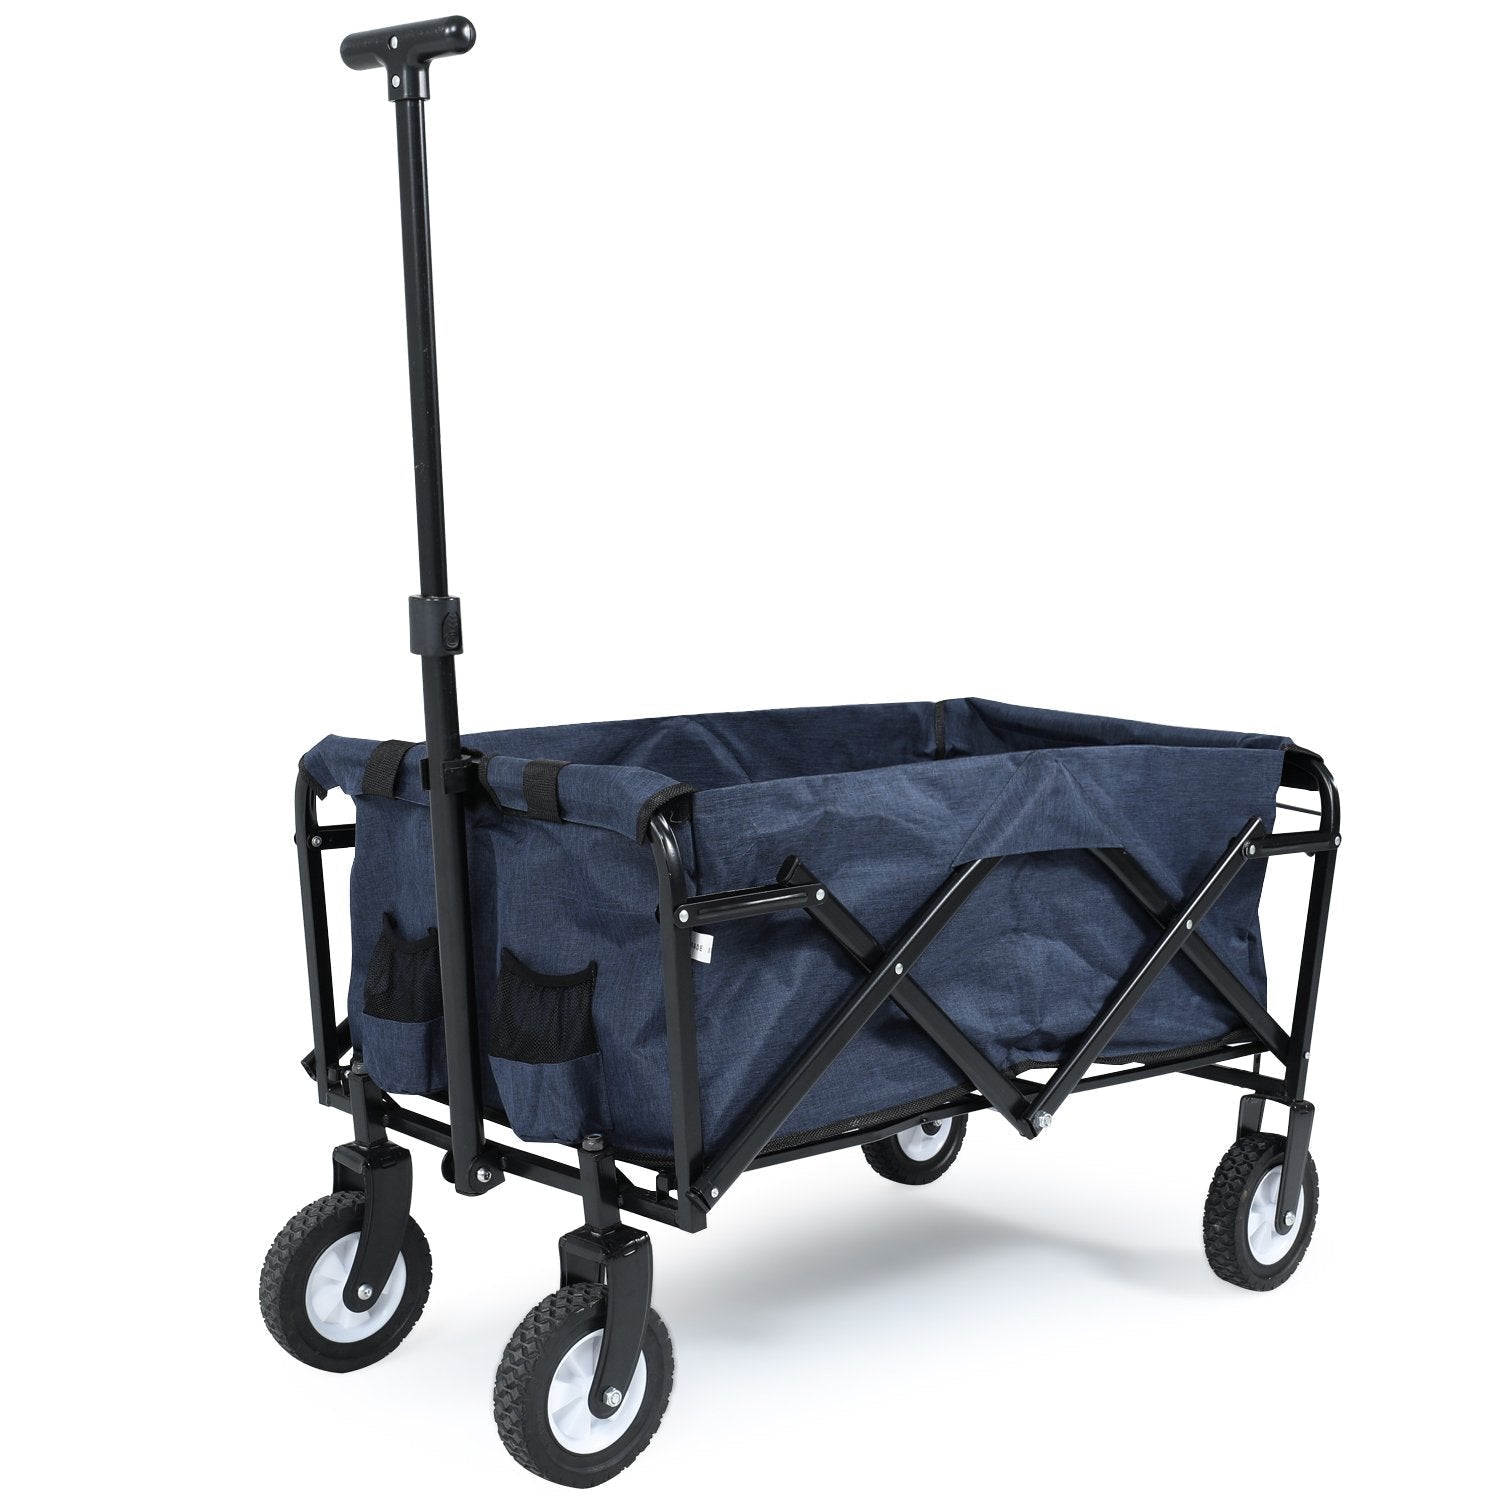 Folding Collapsible Utility Wagon Cart Outdoor Garden Shopping Camping Cart